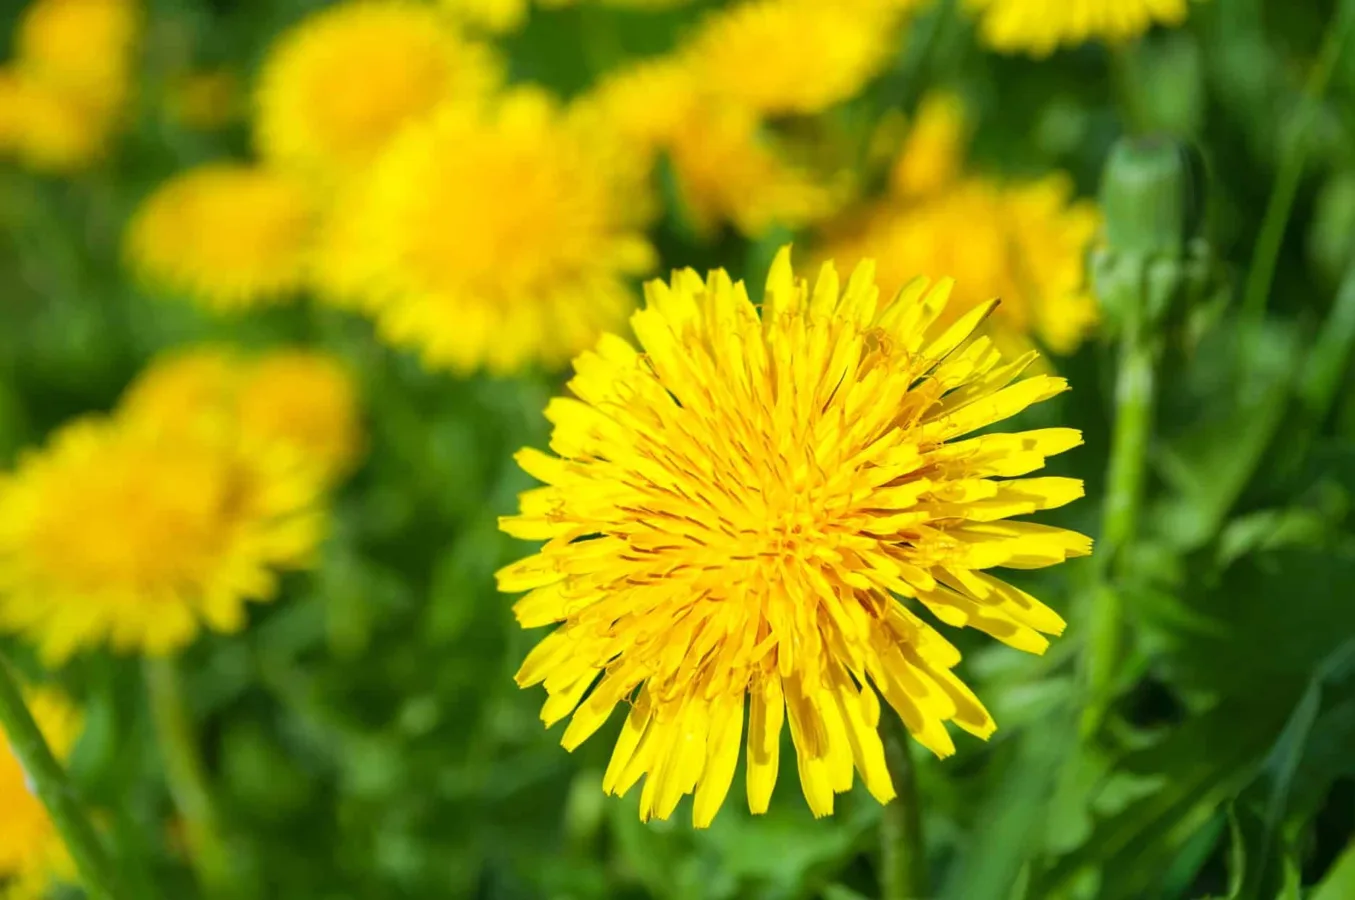 Żółty kwiat mniszka lekarskiego z widocznymi szczegółami płatków i pręcików, otoczony zielonymi liśćmi i trawą, w naturalnym, słonecznym świetle